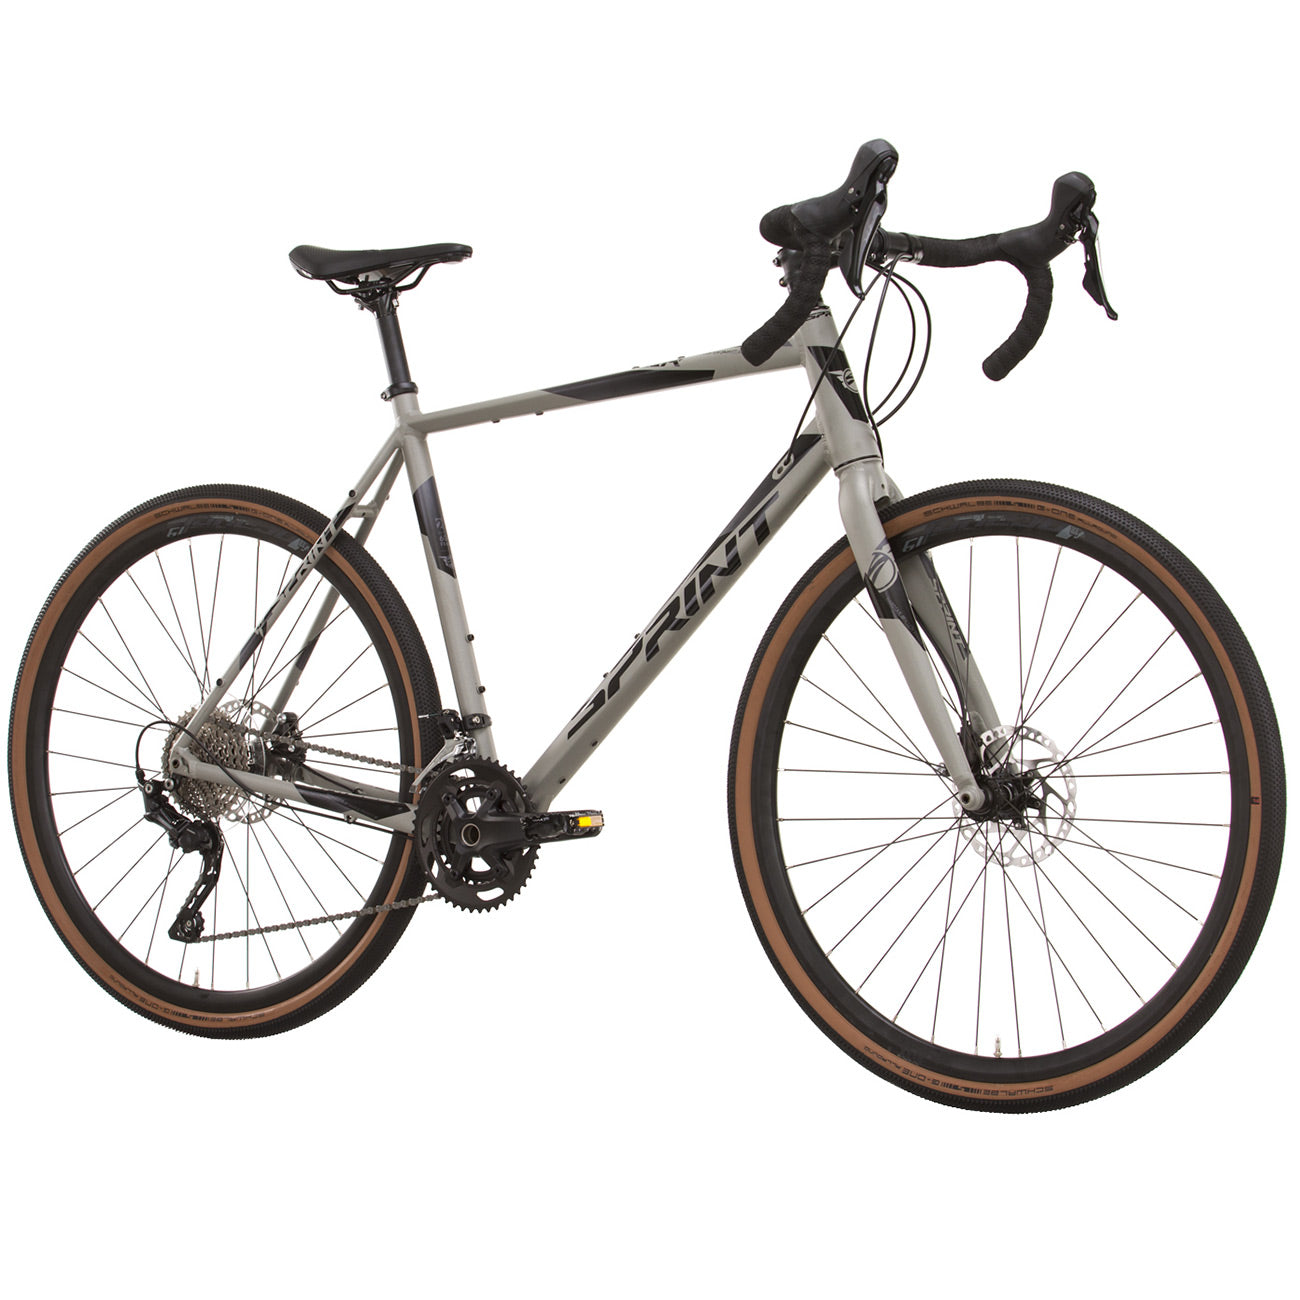 herren-gravel-bike-fahrrad-whister-shimano-grx-400-2-9-gang-52-56-cm-schwarz-grau-2